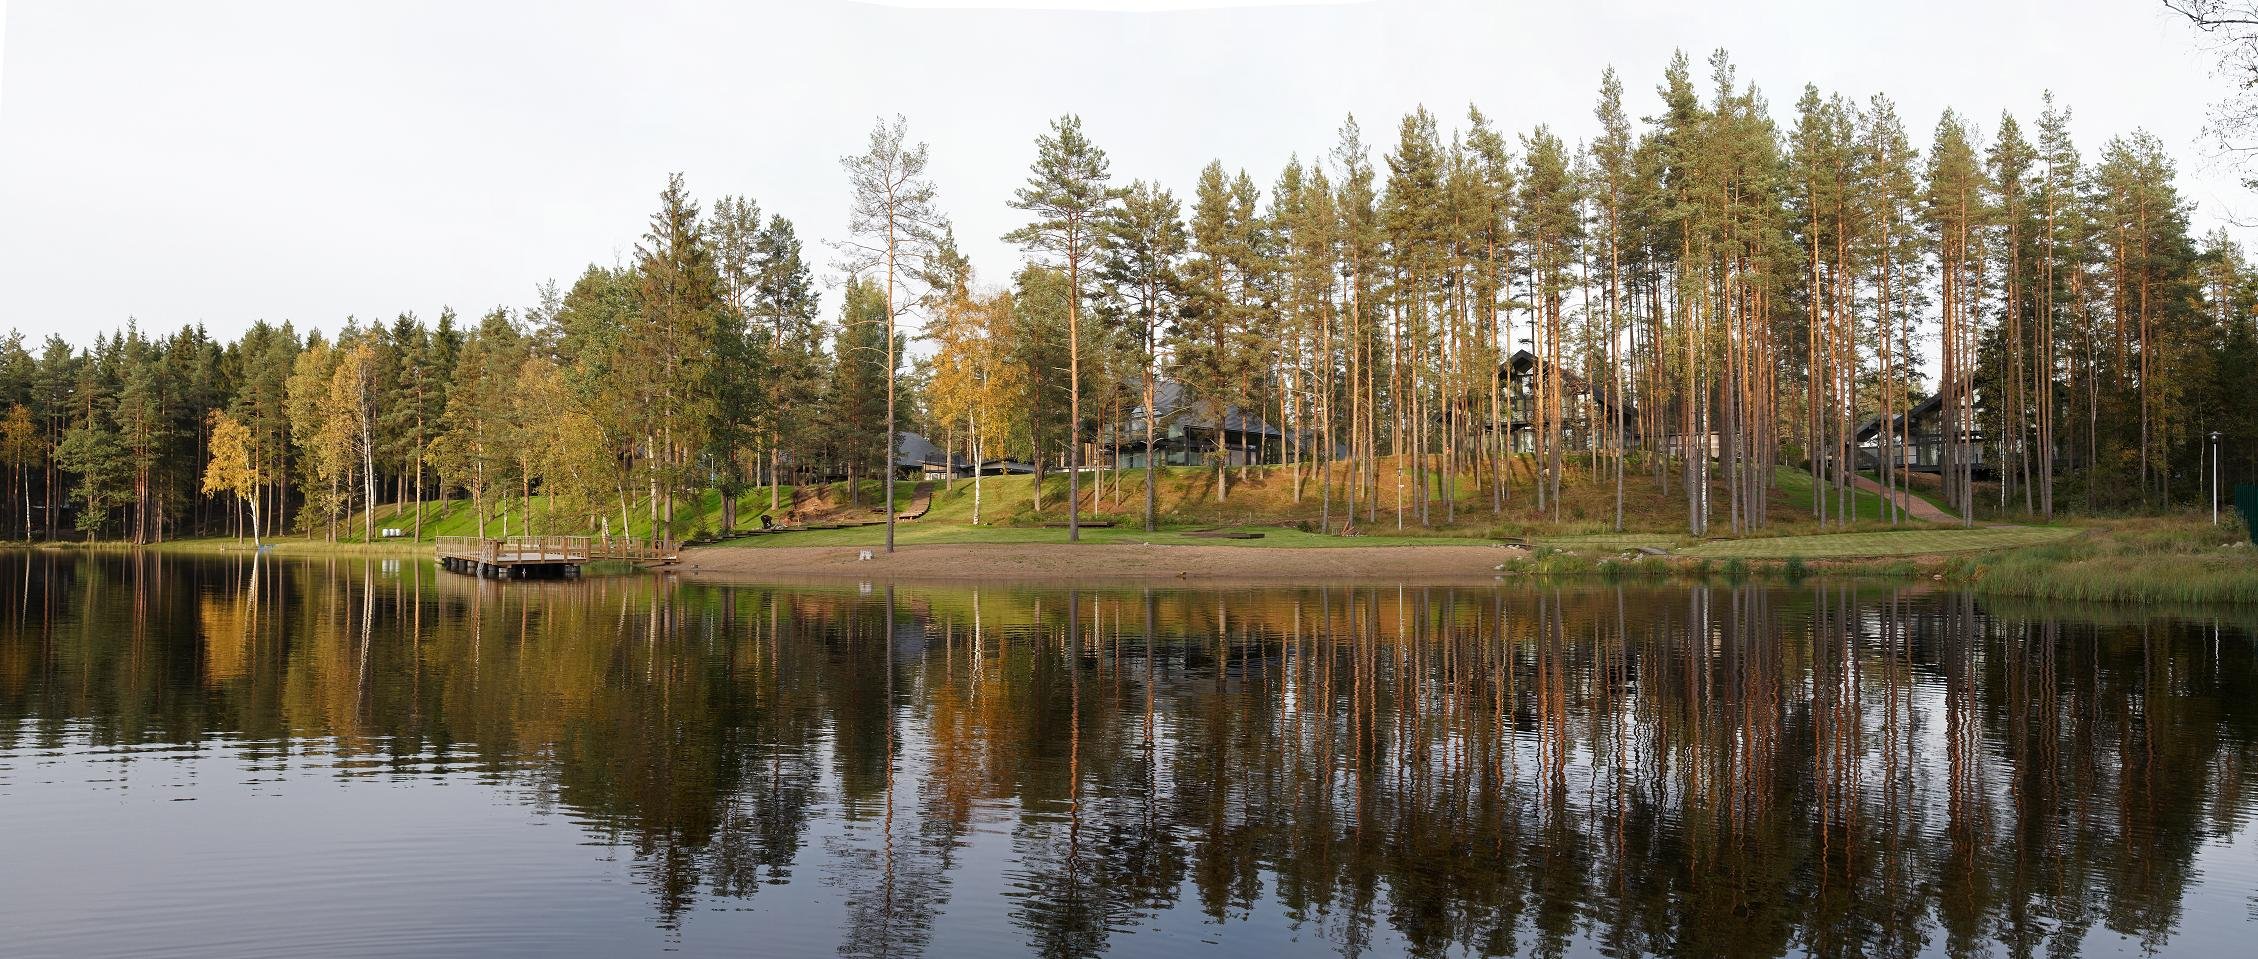 Патрики клаб коттеджный поселок в Ленинградской области